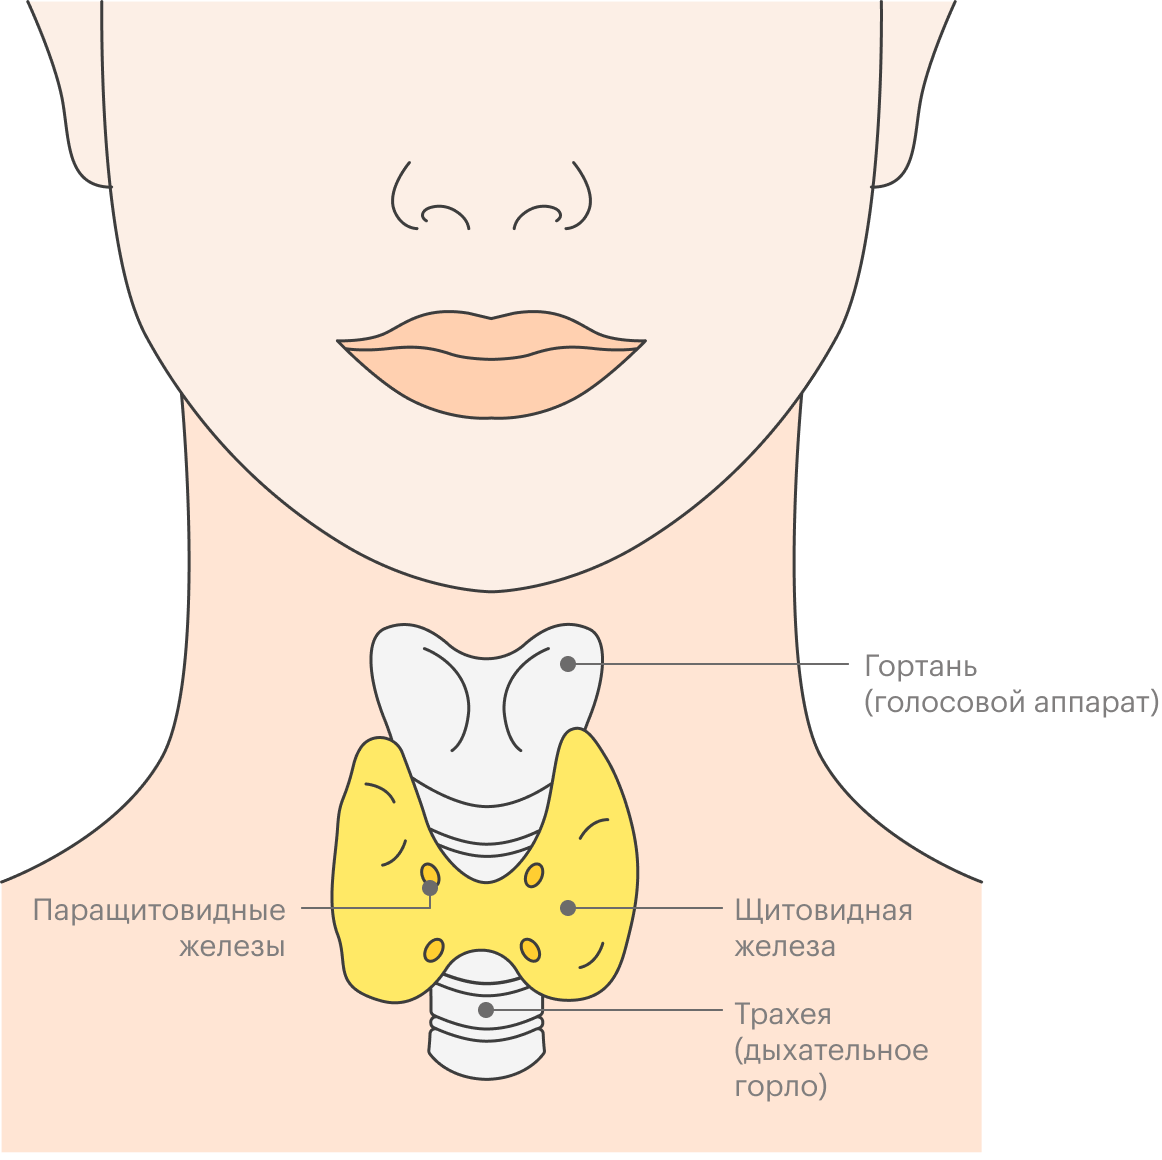 Как проверить щитовидную железу: анализы, симптомы проблем со щитовидкой у  мужчин и женщин